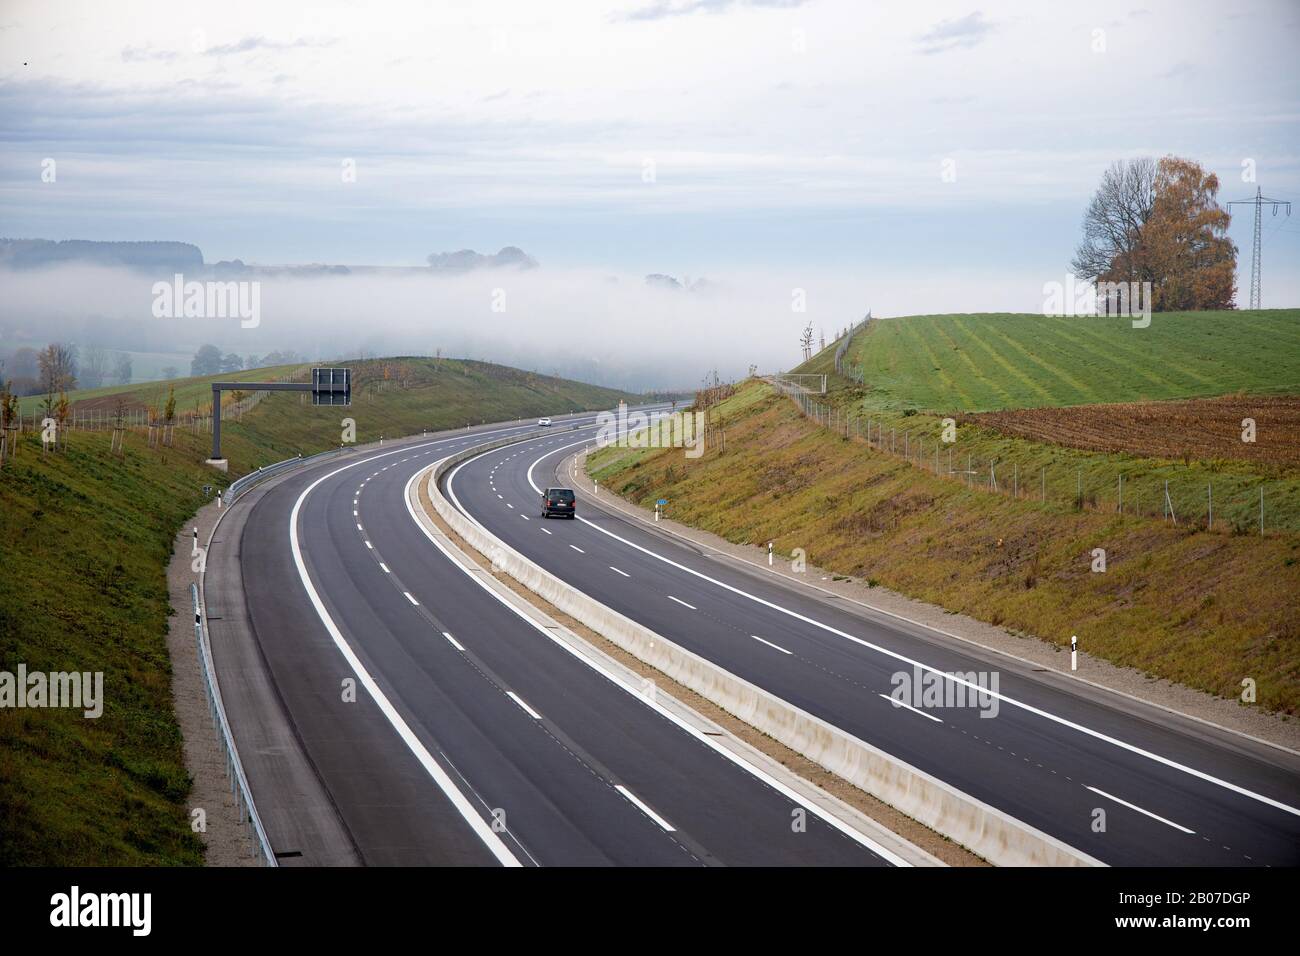 Inversión atmosférica, banco de niebla en la autopista, peligro causado por la repentina aparición de niebla, Alemania, Baviera, Autobahn A 94 Foto de stock